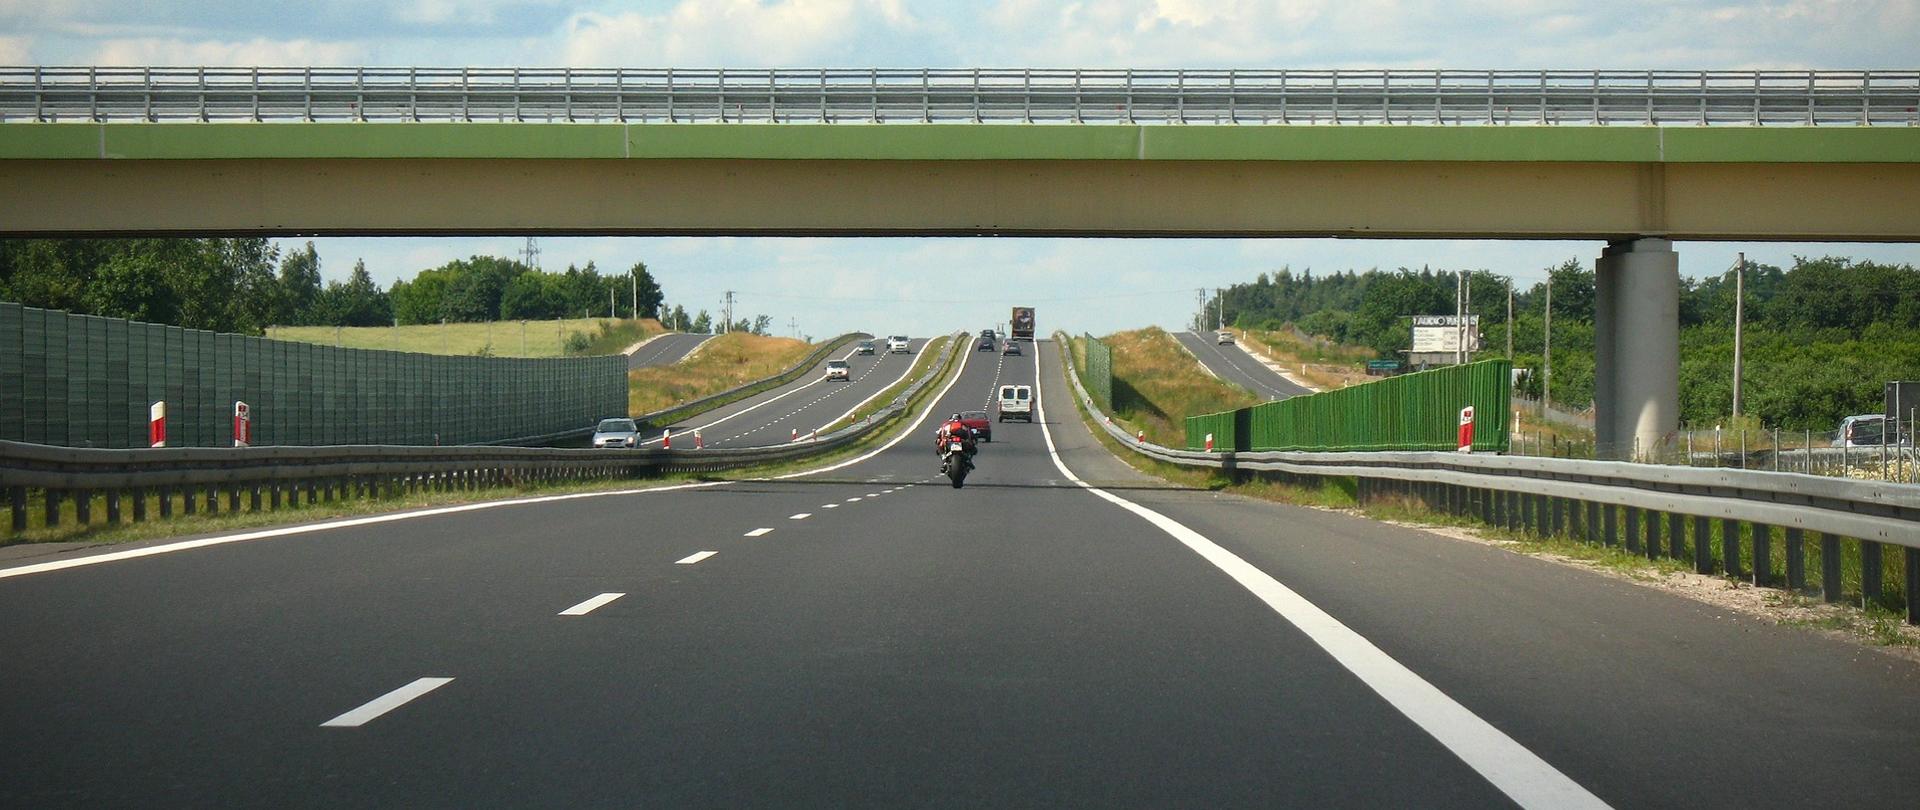 Droga szybkiego ruchu - zdjęcie przykładowe